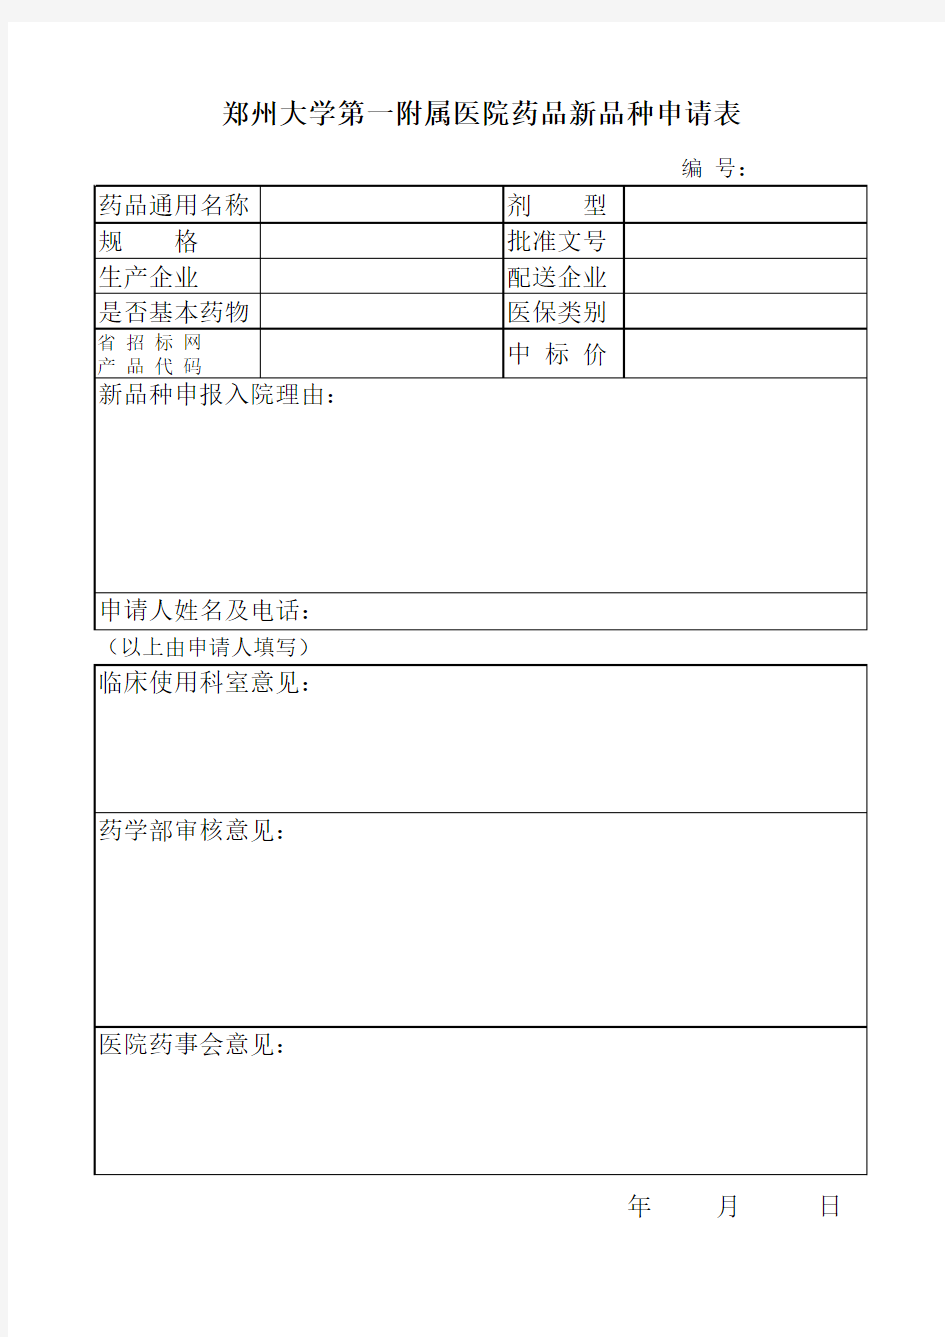 郑州大学第一附属医院药品新品种申请表